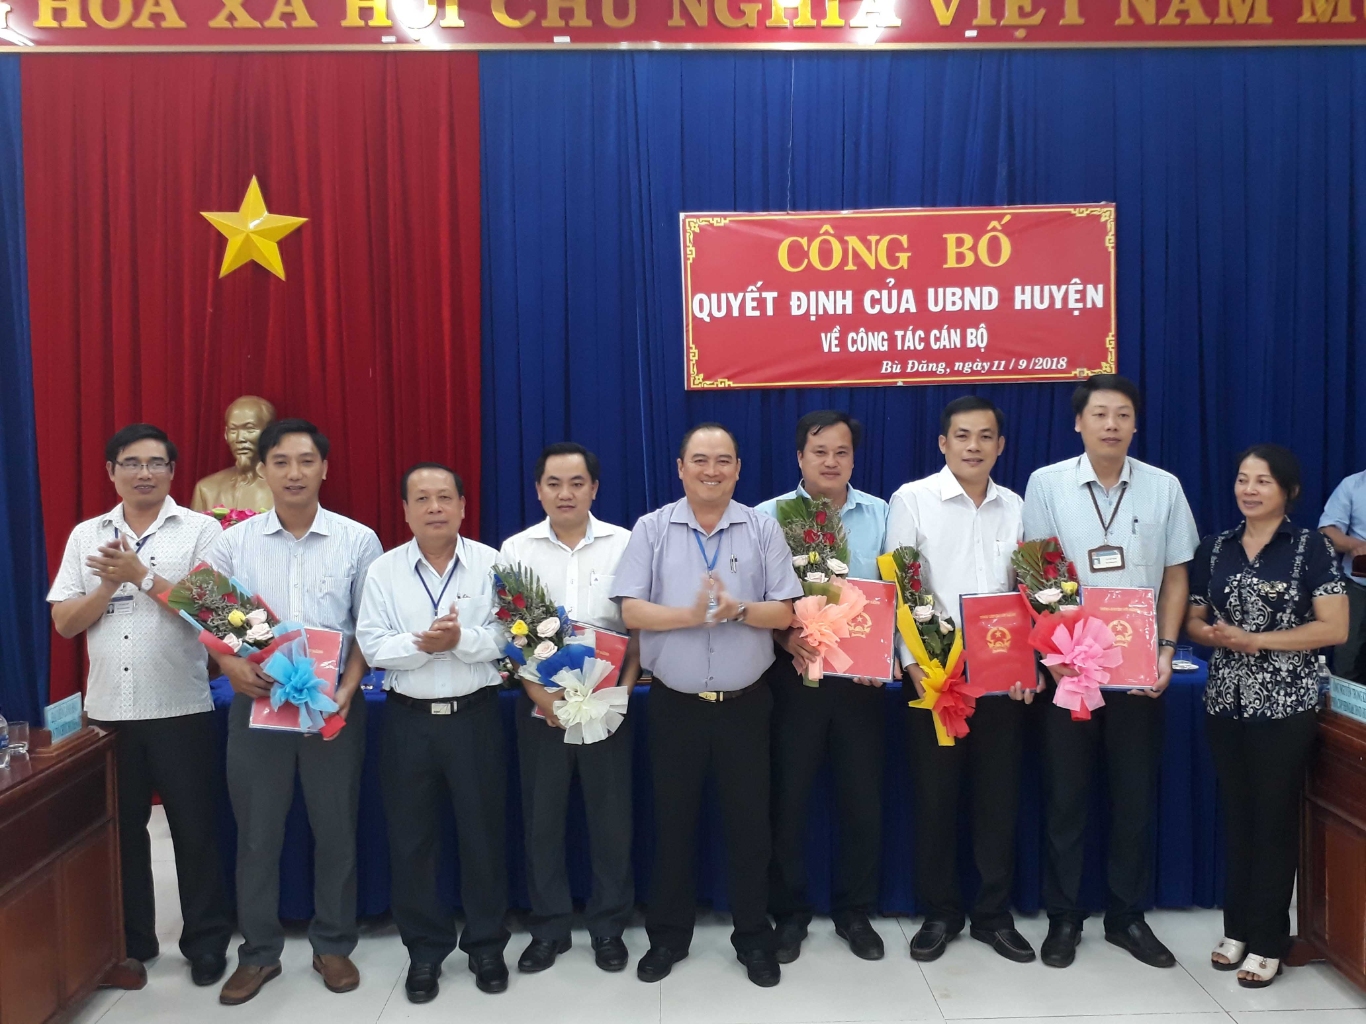 Chủ tịch UBND huyện Bù Đăng Nguyễn Thanh Bình  và các phó chủ tịch  HĐND  UBND huyện trao quyết định và chụp hình lưu niệm với các cán bộ được bổ nhiệm